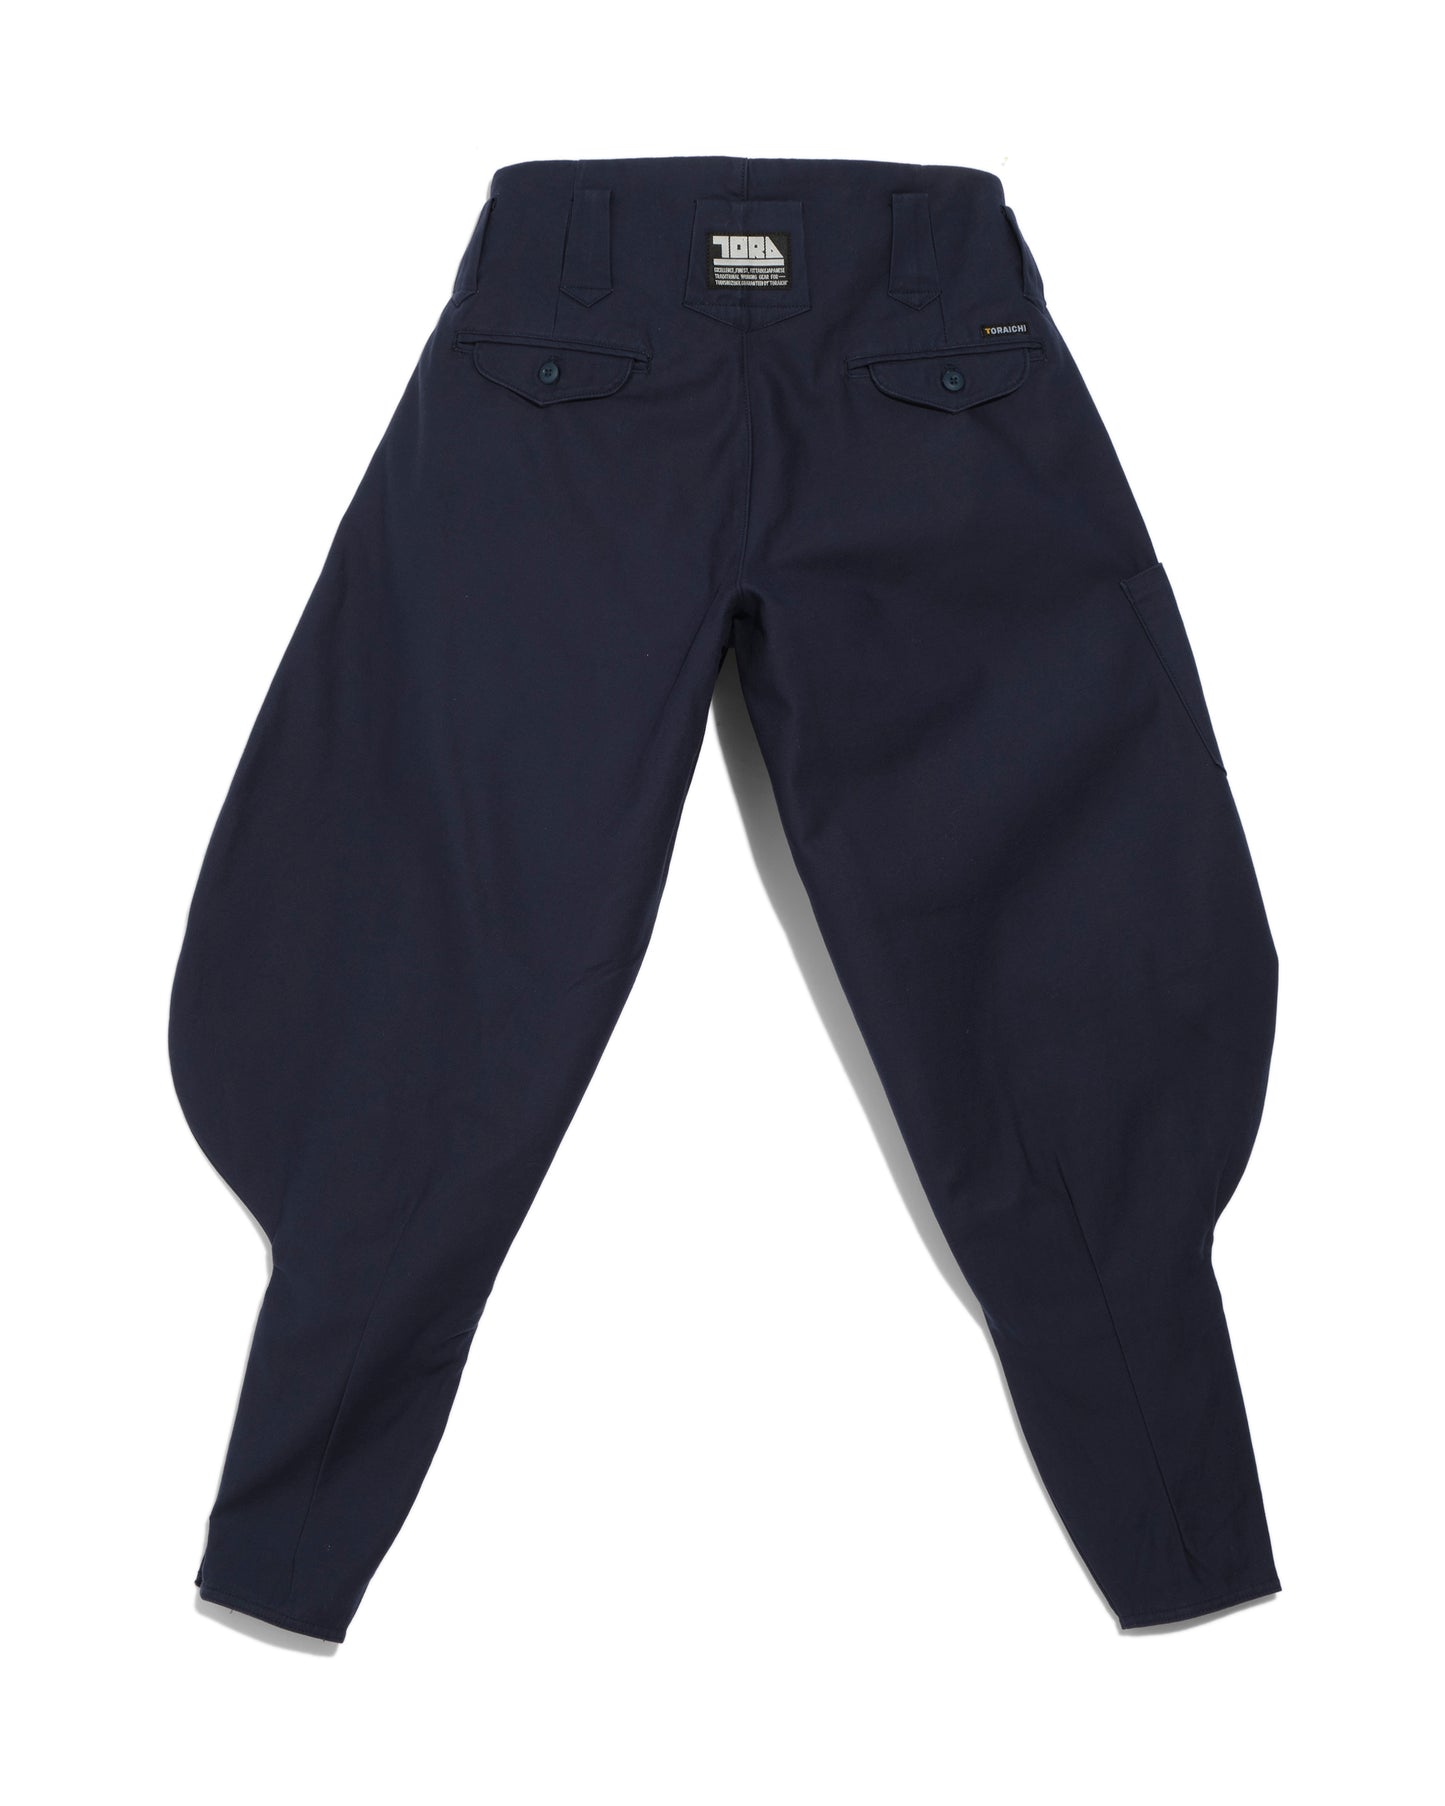 Pantalon japonais Long Hachibu - marine - Toraichi